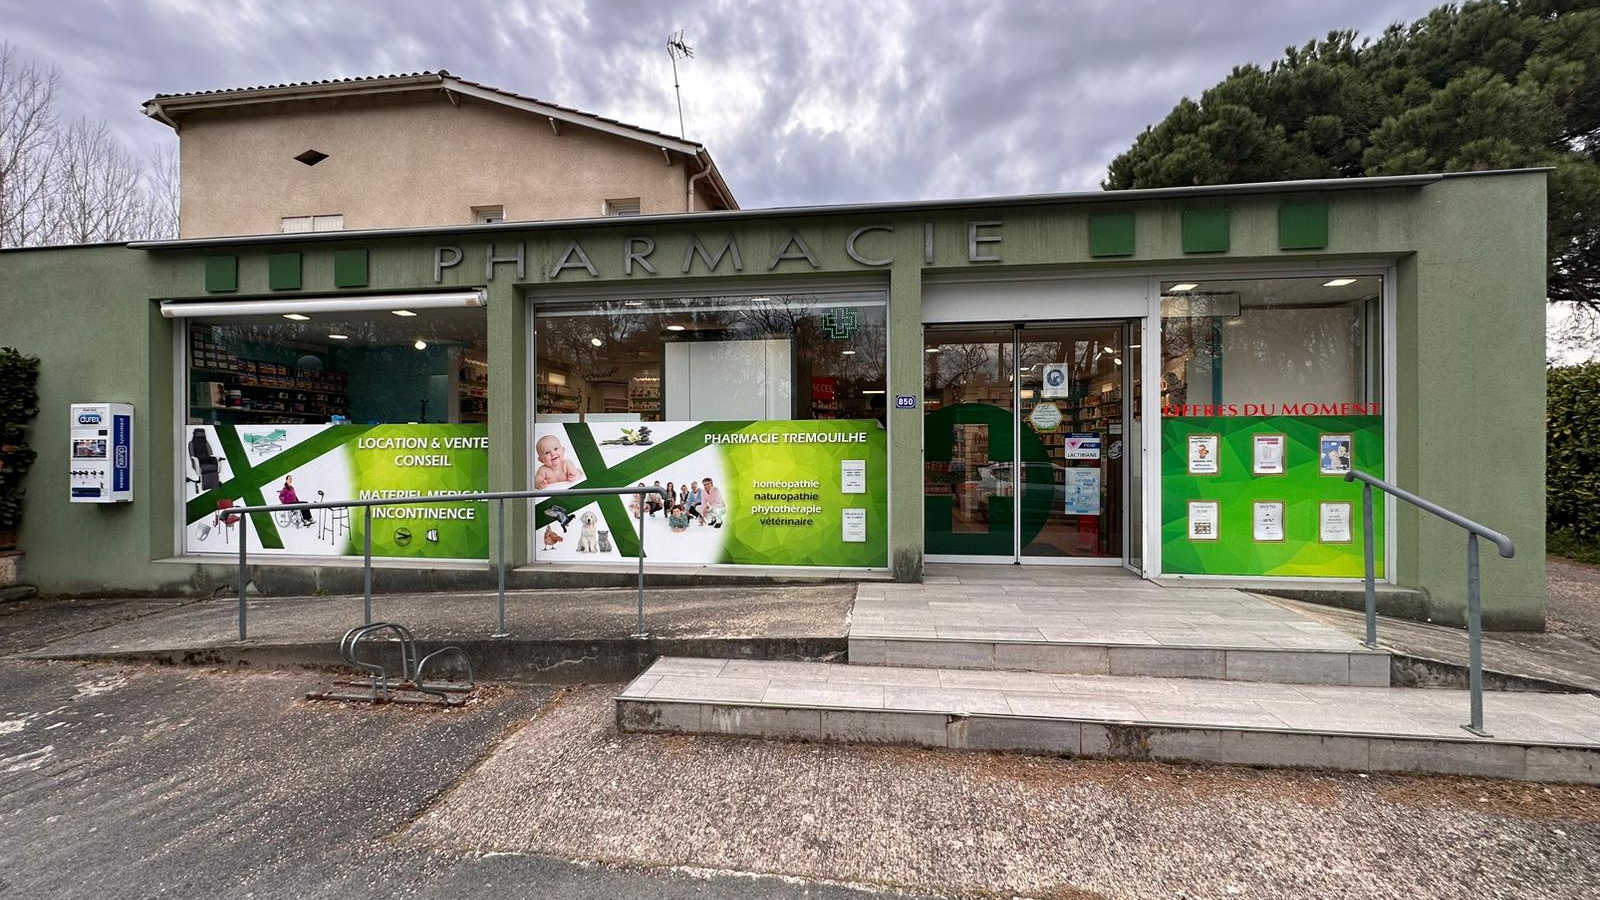 Magasin Pharmacie & Matériel Médical Tremouilhe - Fourques-sur-Garonne (47200) Visuel 1